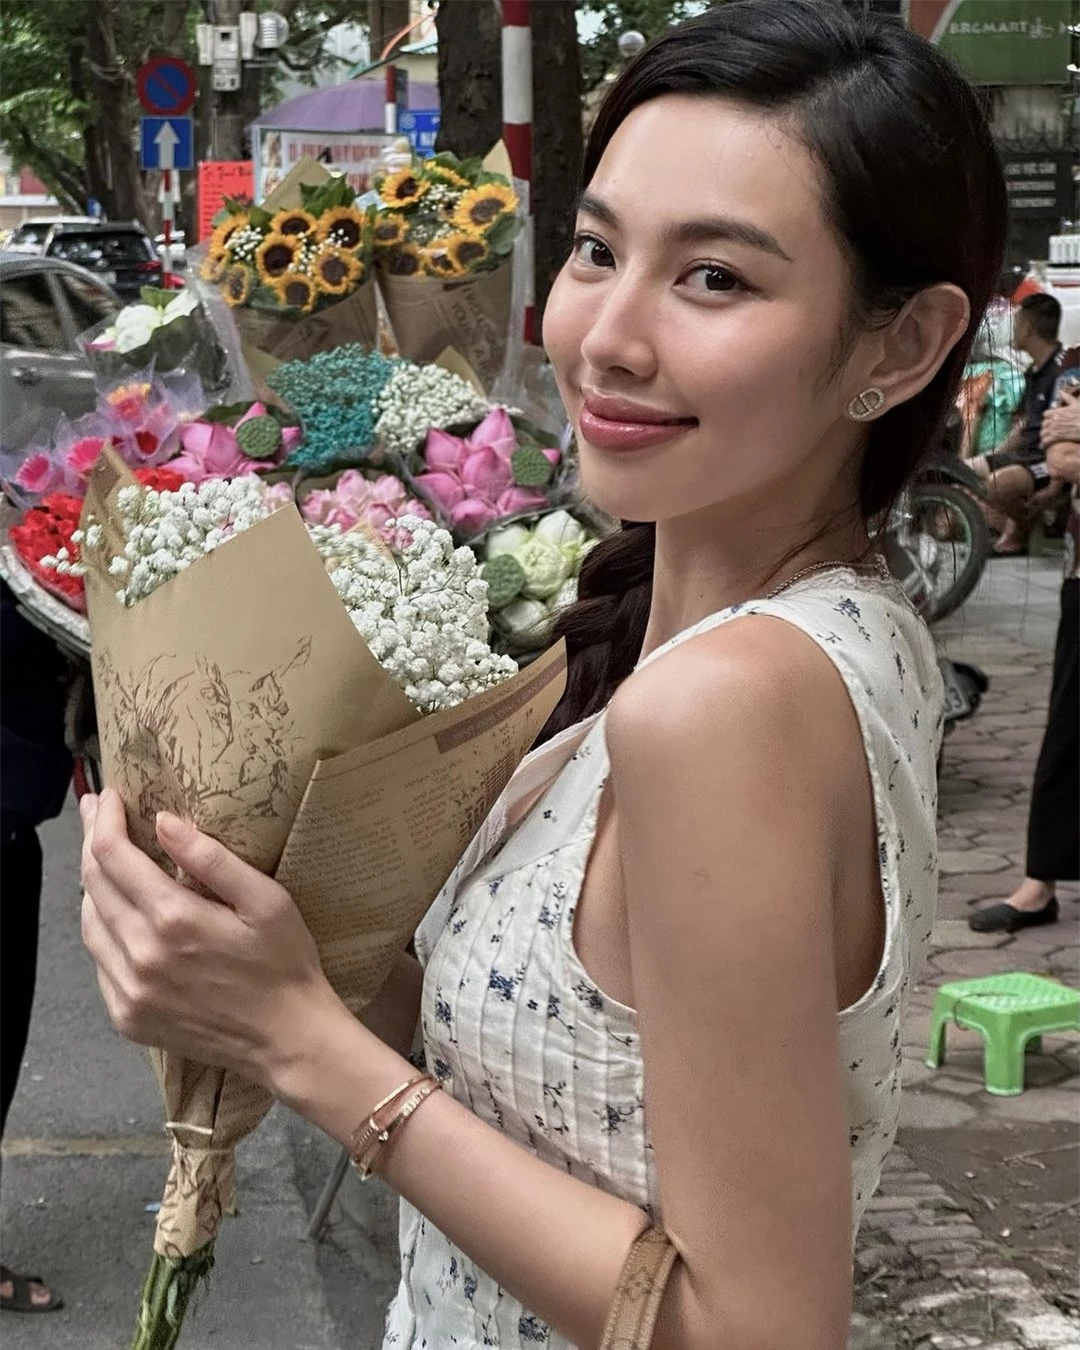 Hoa hậu Thùy Tiên tranh thủ đi chụp ảnh với xe hoa trong chuyến công tác Hà Nội. Khác với hình ảnh quyền lực, sắc sảo tại các sự kiện, Thùy Tiên ở ngoài đời giản dị và gần gũi hơn rất nhiều.